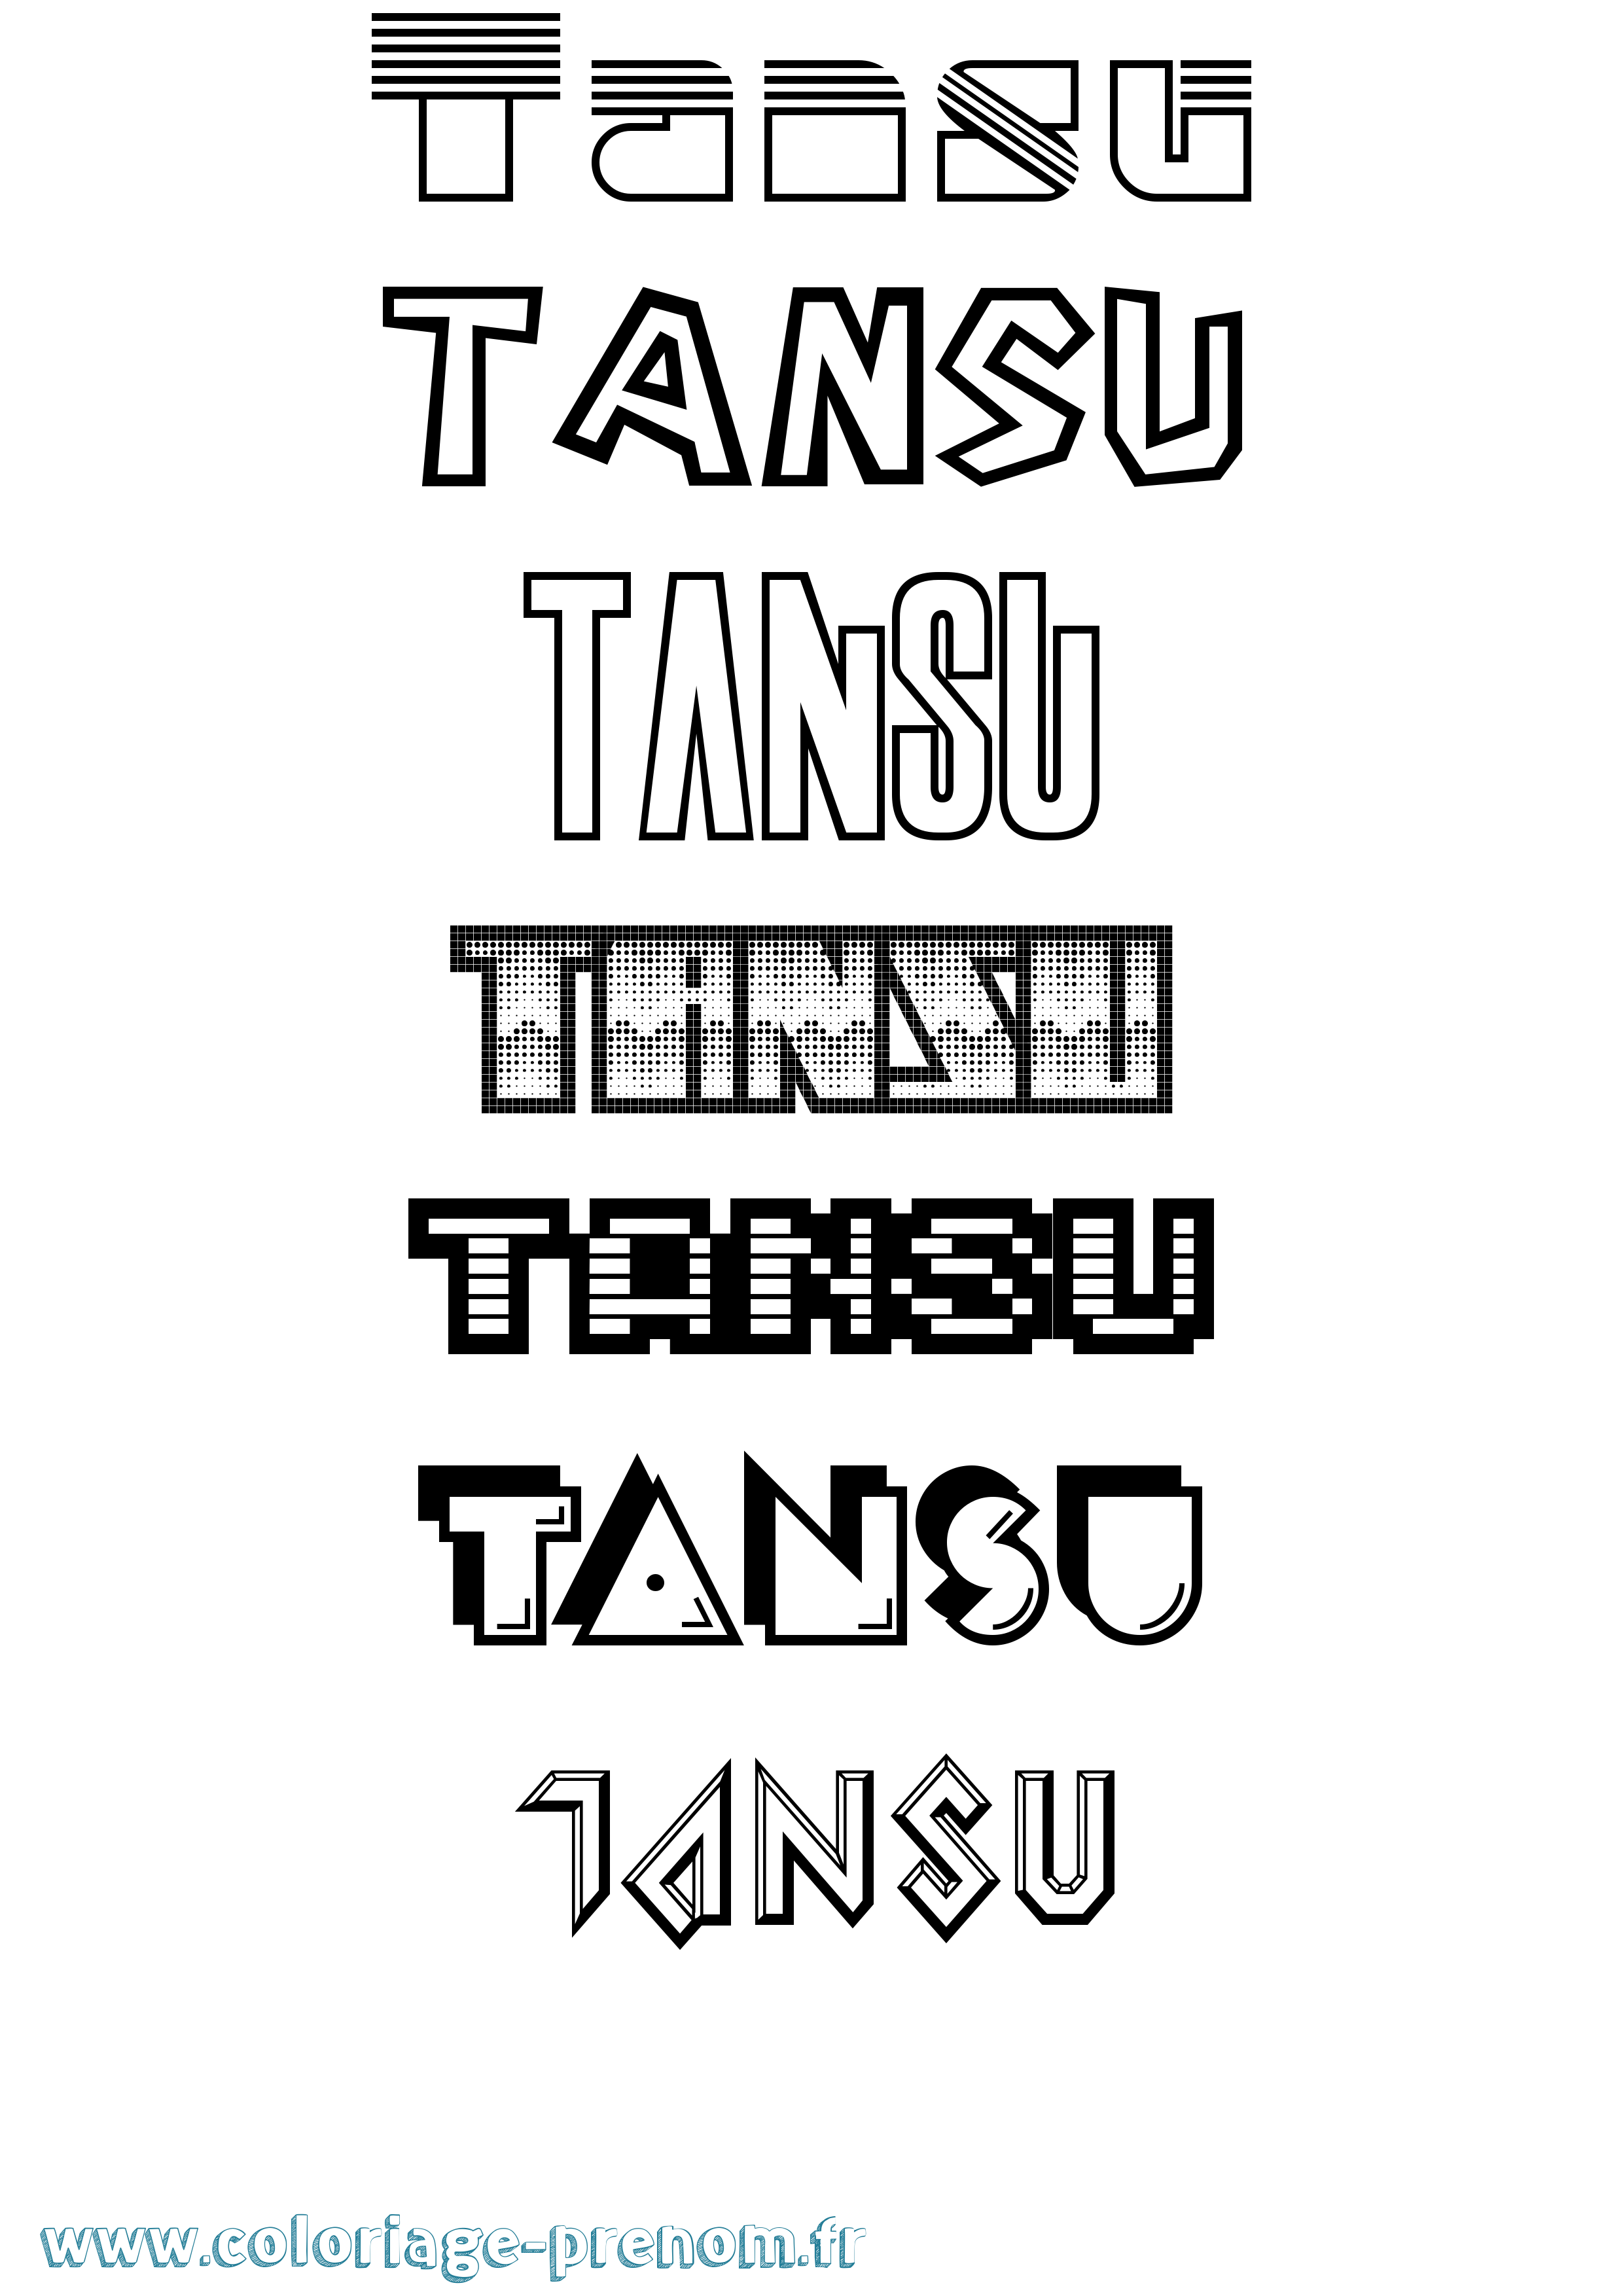 Coloriage prénom Tansu Jeux Vidéos